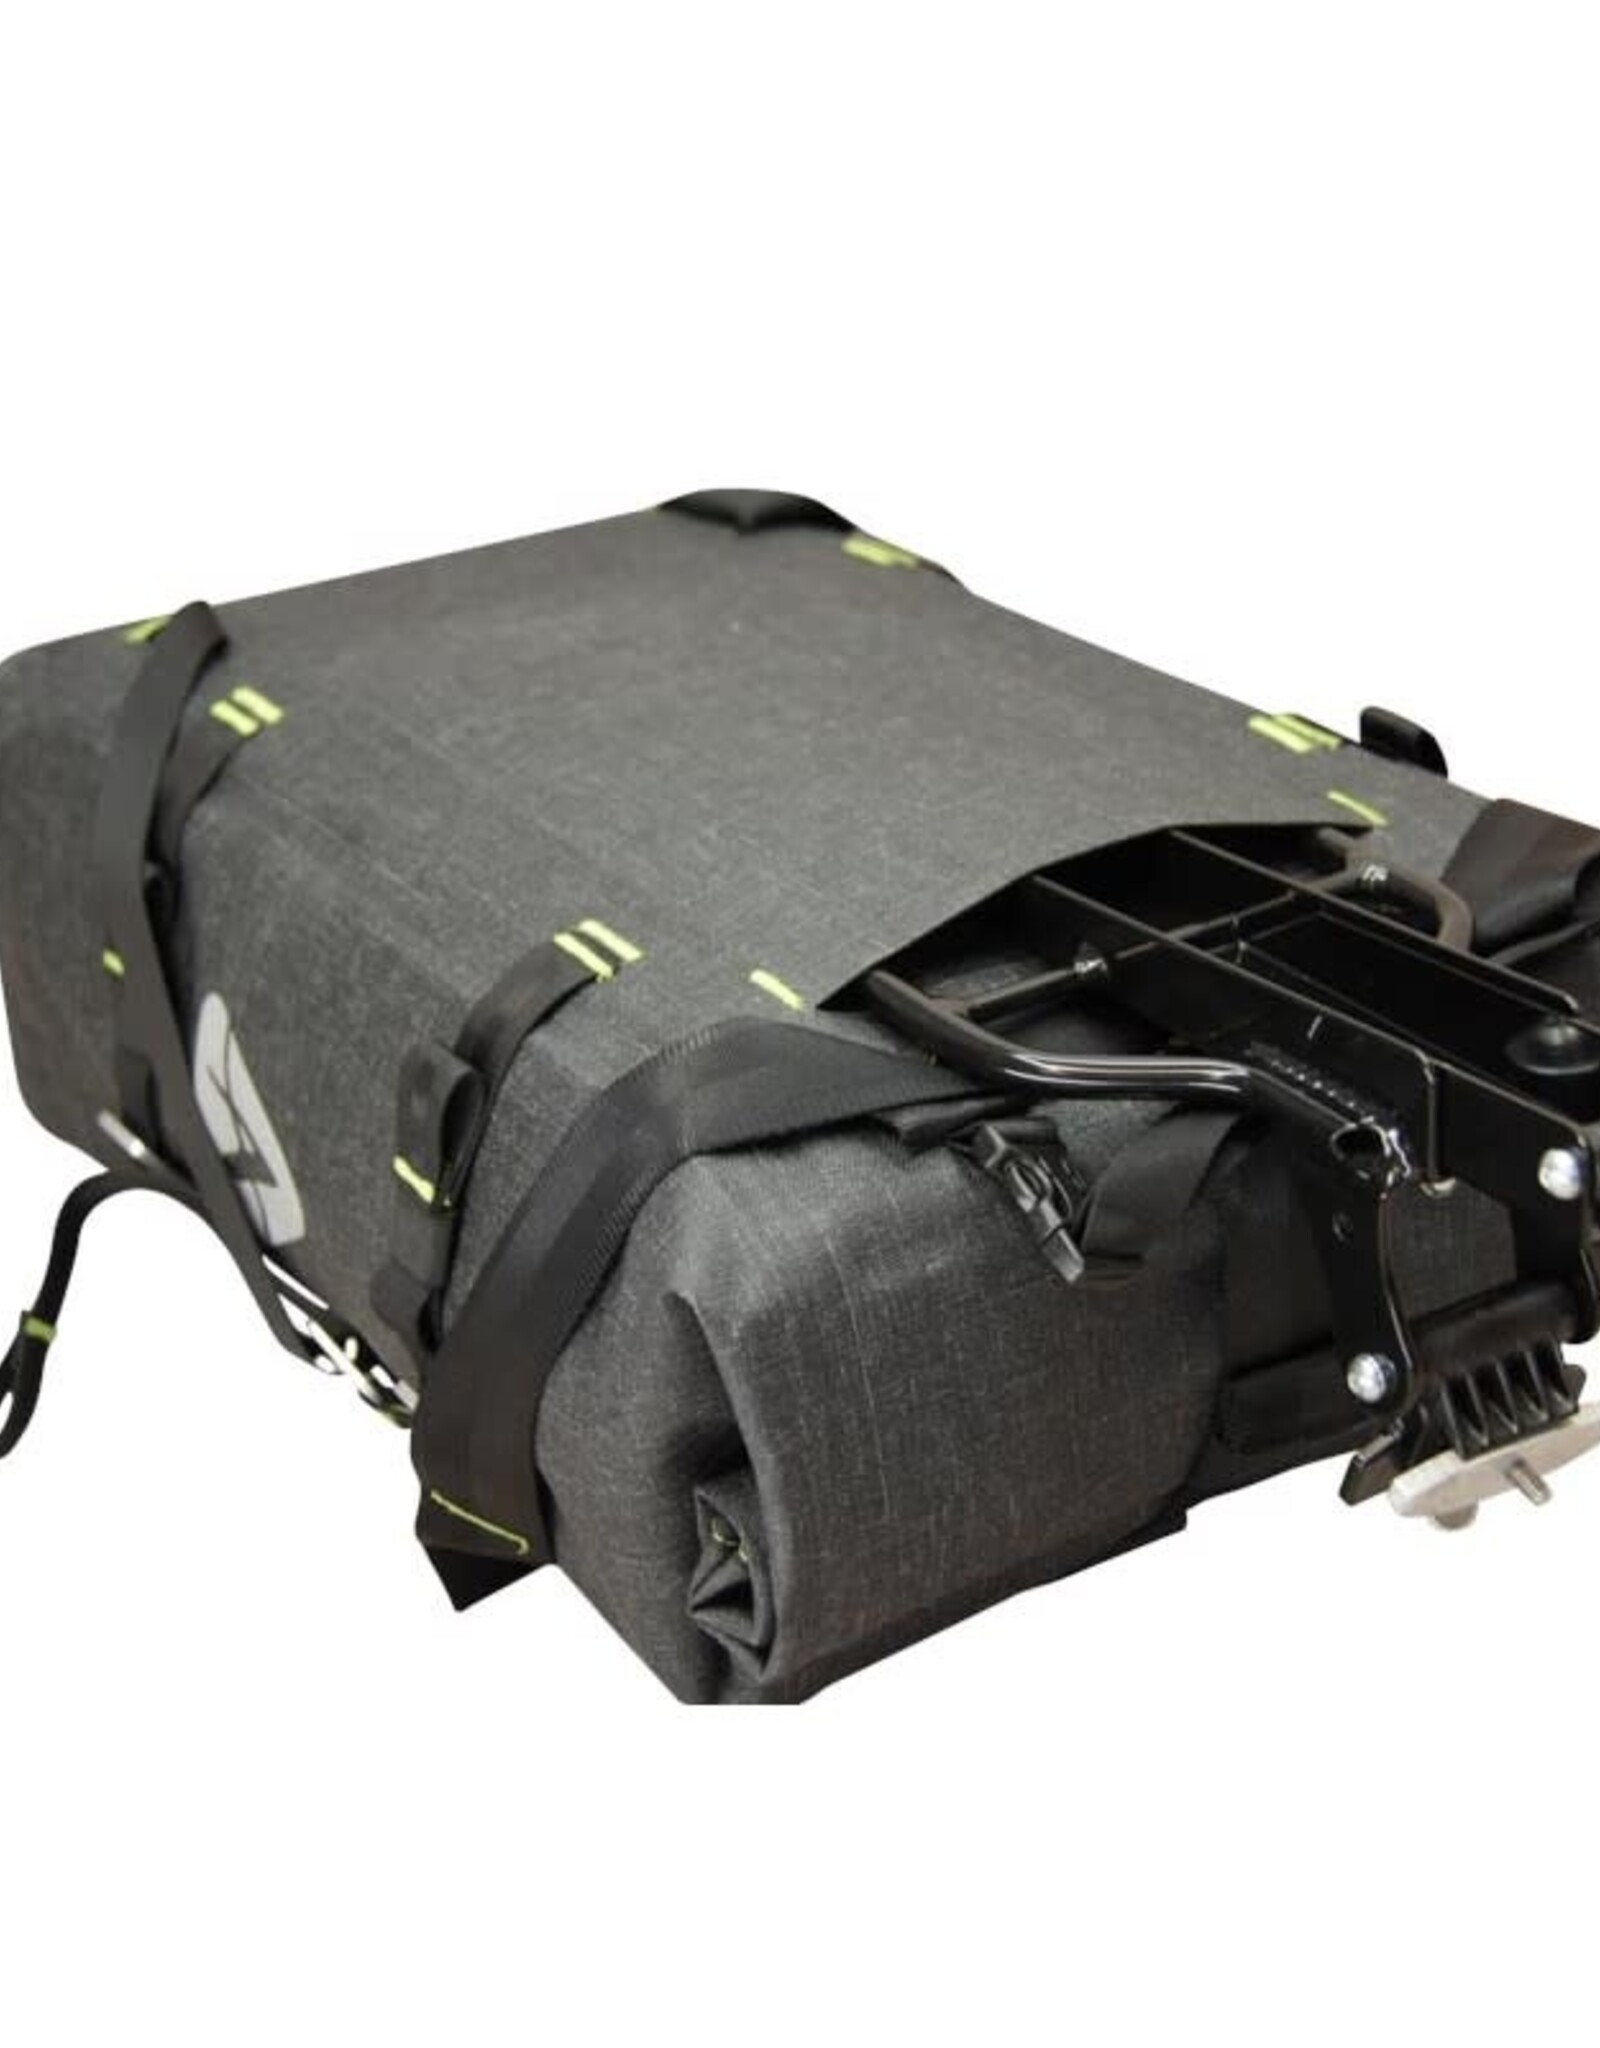 Arkel Arkel Grey DRYPACK Cycling Waterproof Backpack Roll-top